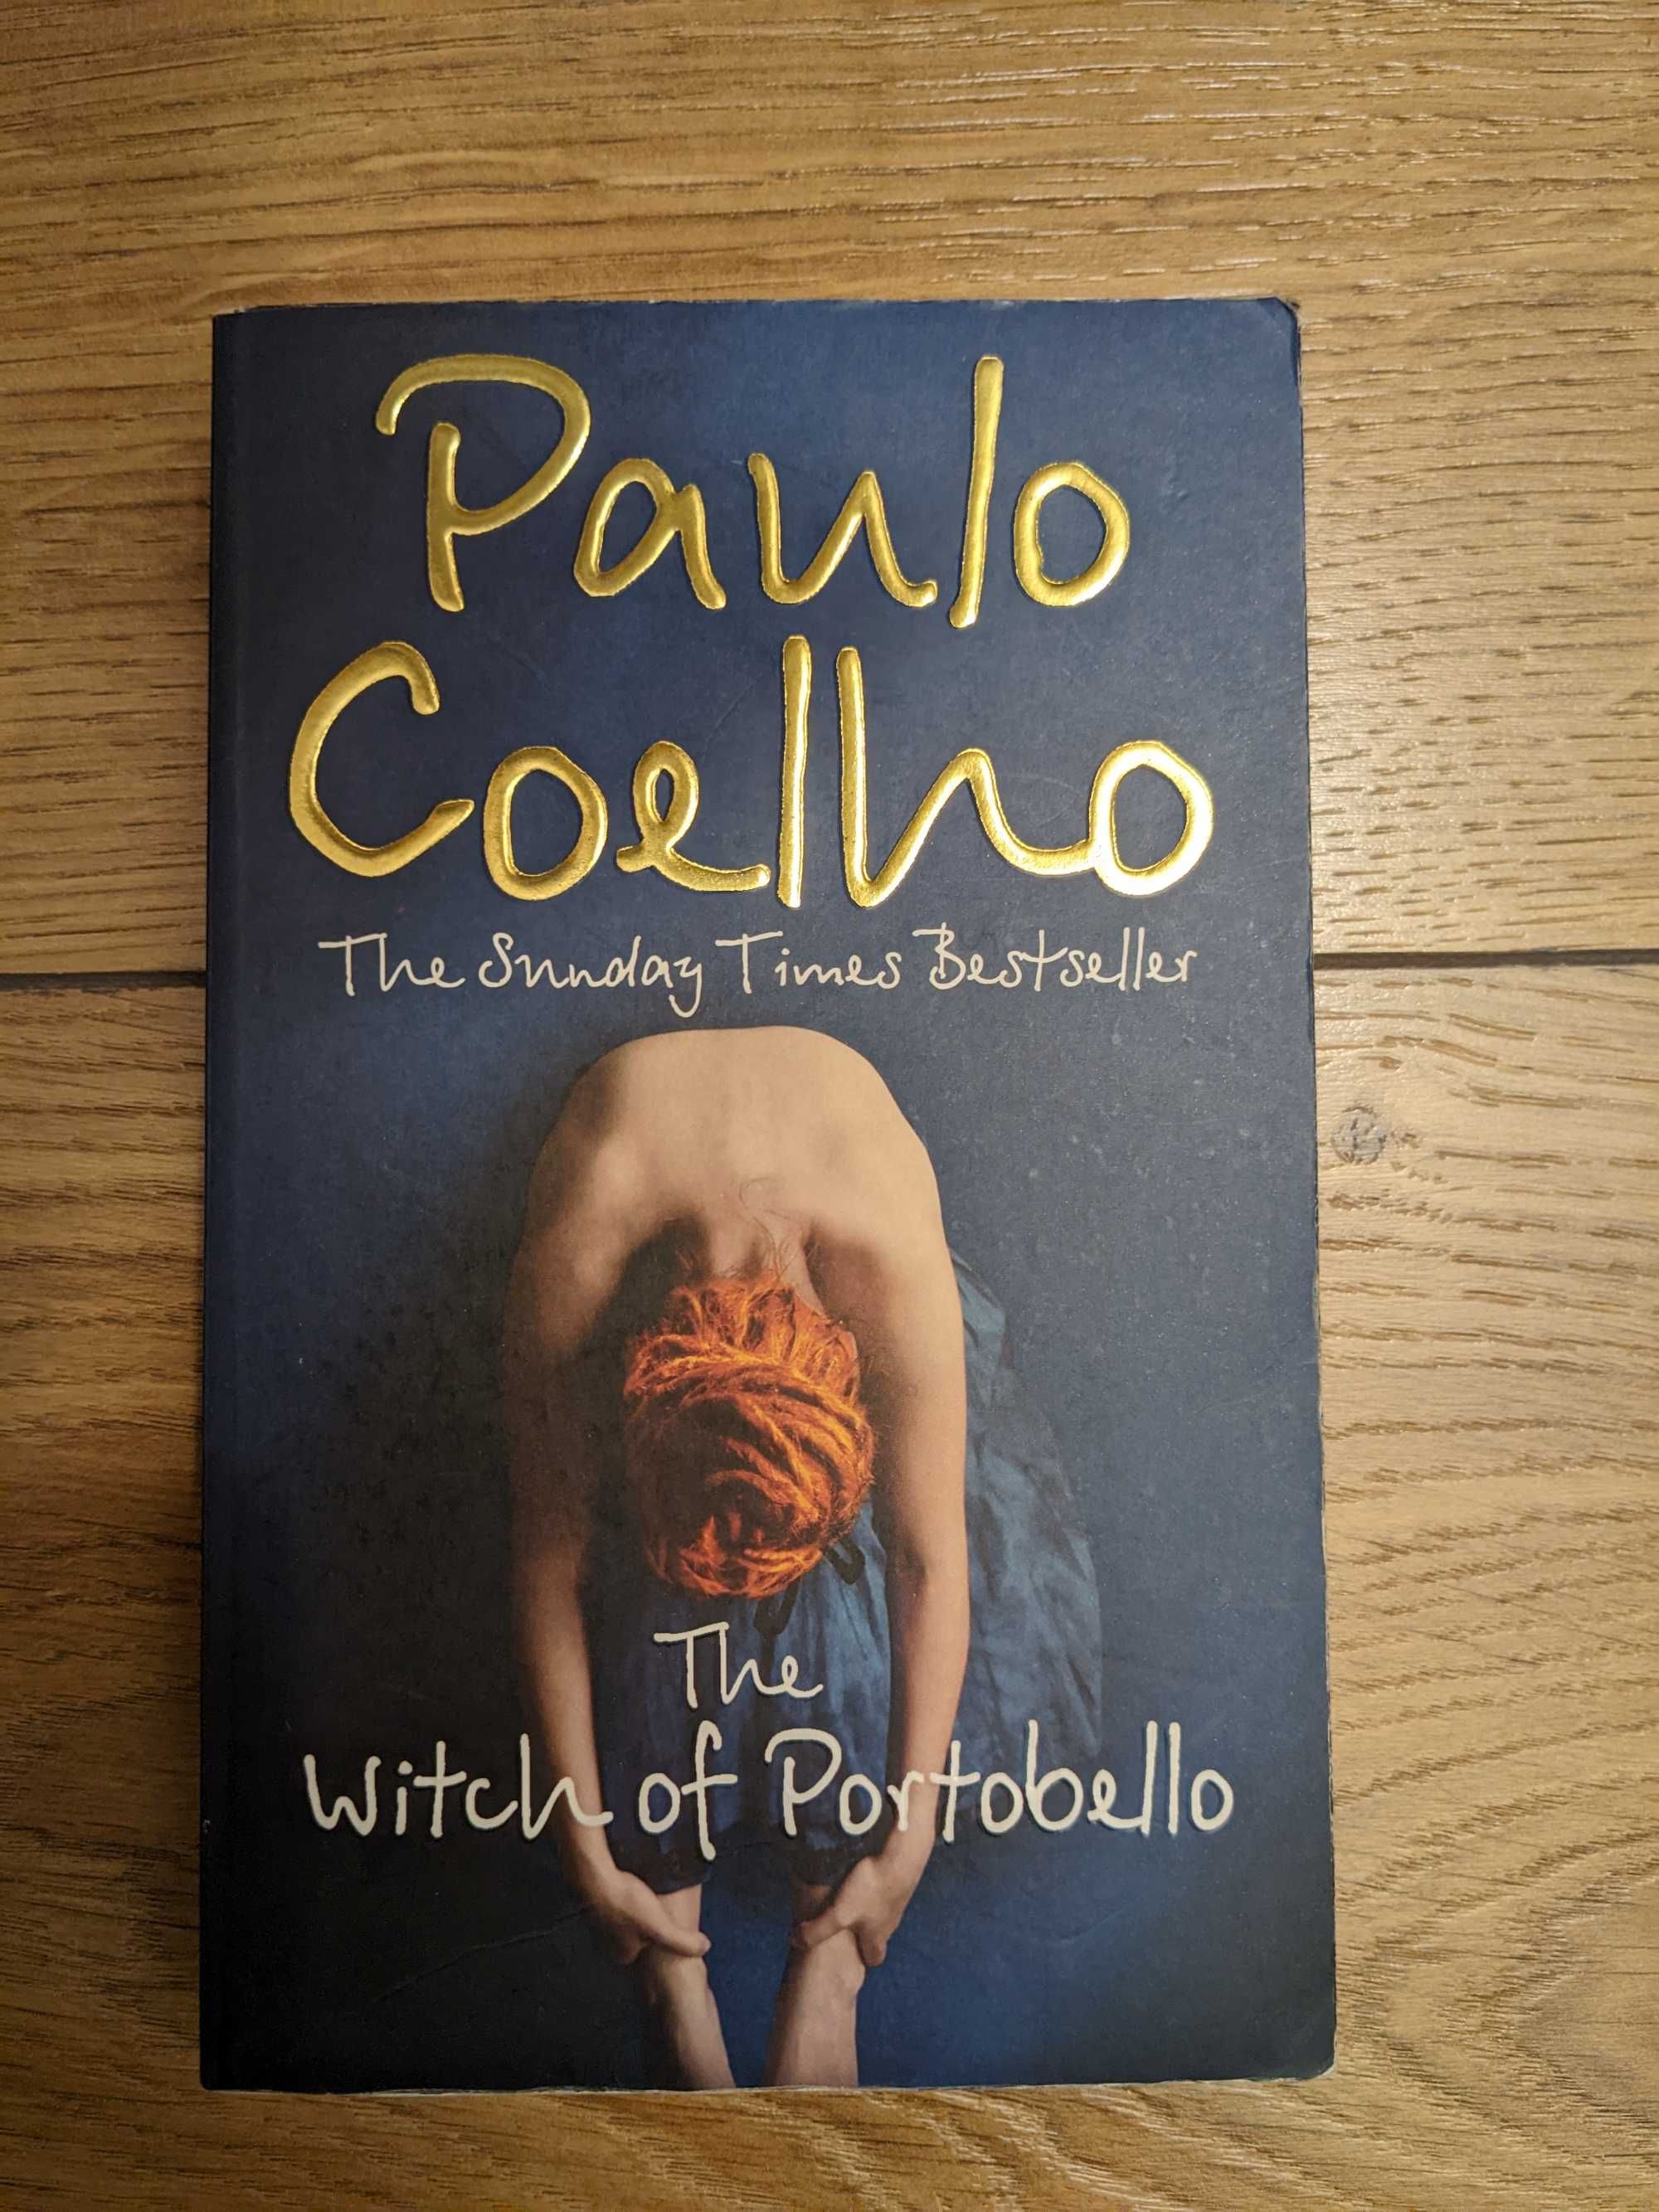 The witch of Portobello Paulo Coelho